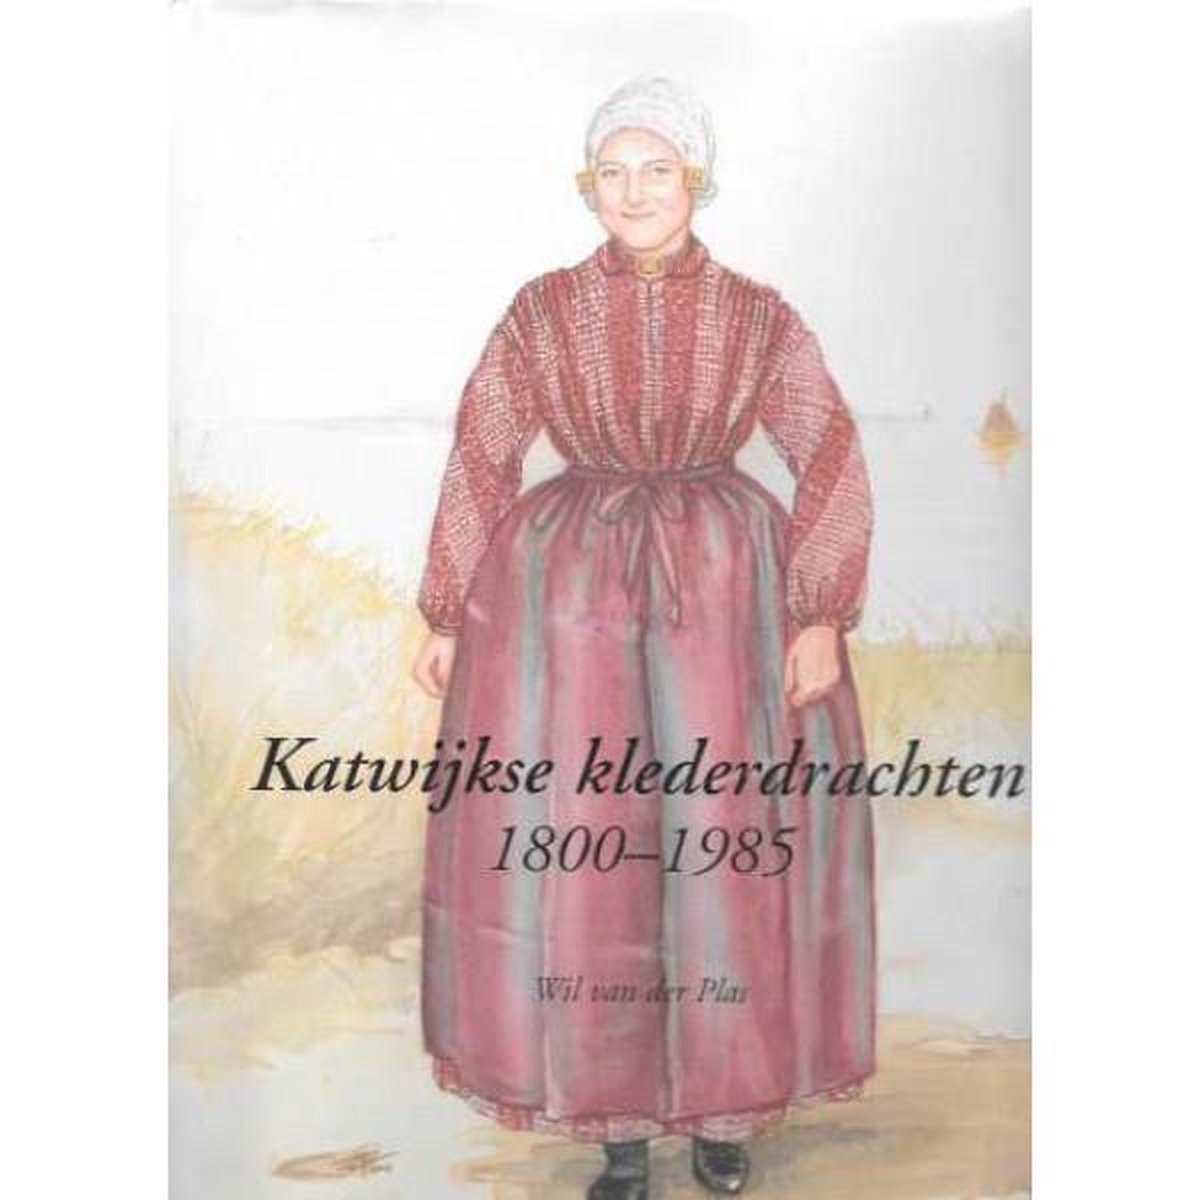 Katwijkse klederdrachten 1800-1985 - Wil van der Plas